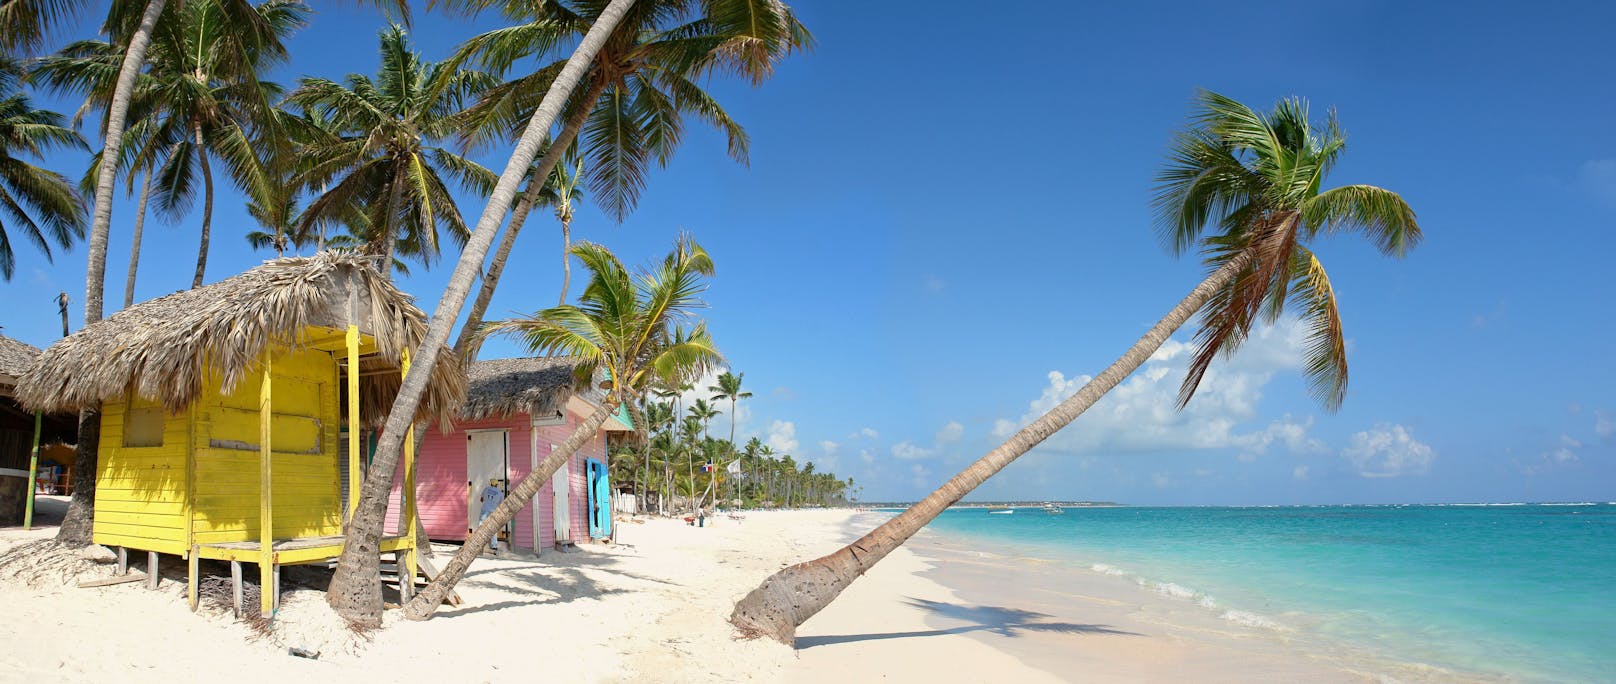 Punta Cana ist ein beliebtes Ferienziel. Doch neben den wunderschönen Karibikstränden lauern auch Gefahren durch Erkrankungen.